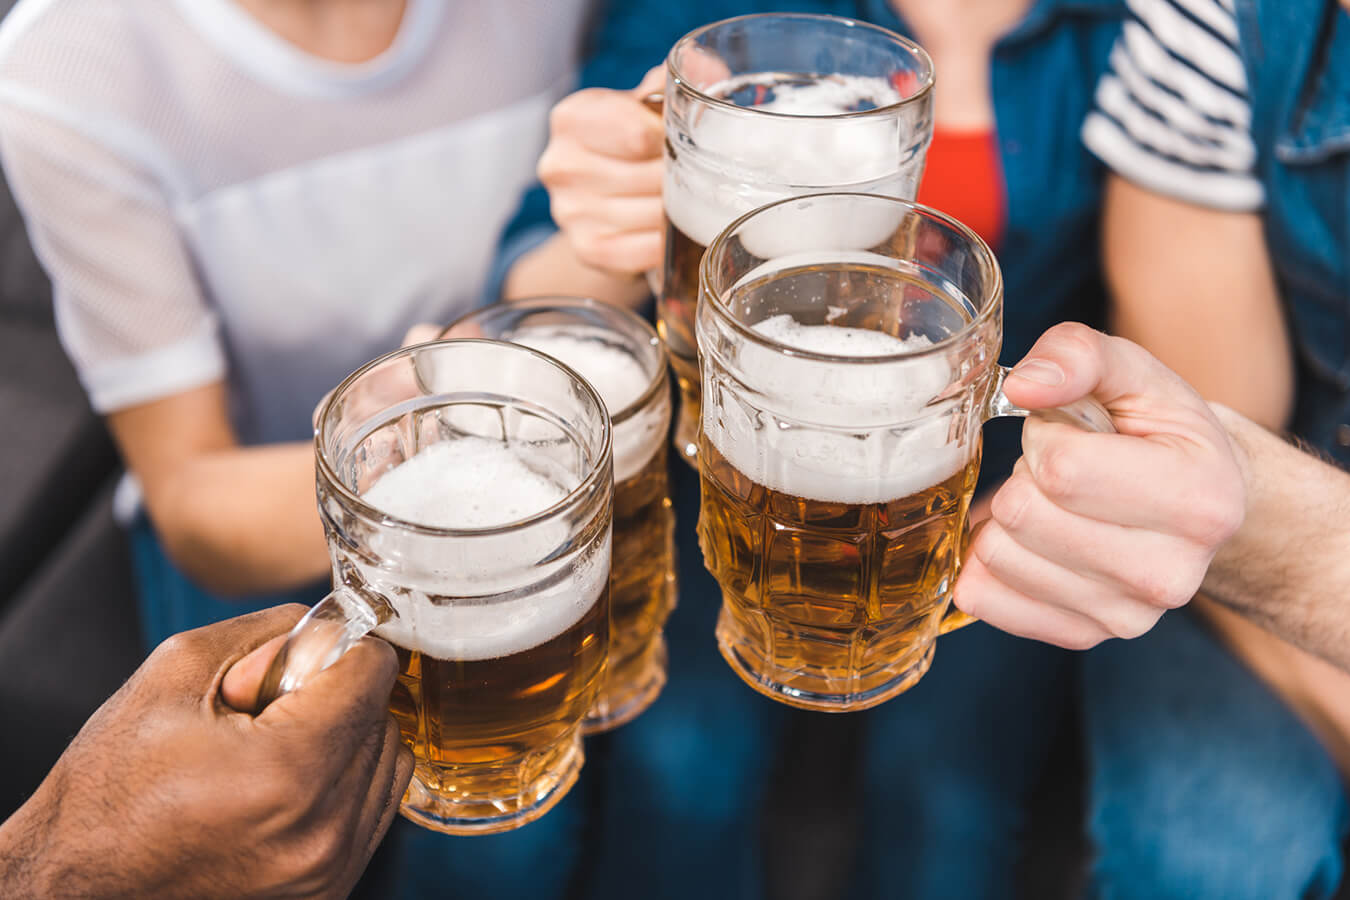 La birra: bevi consapevolmente